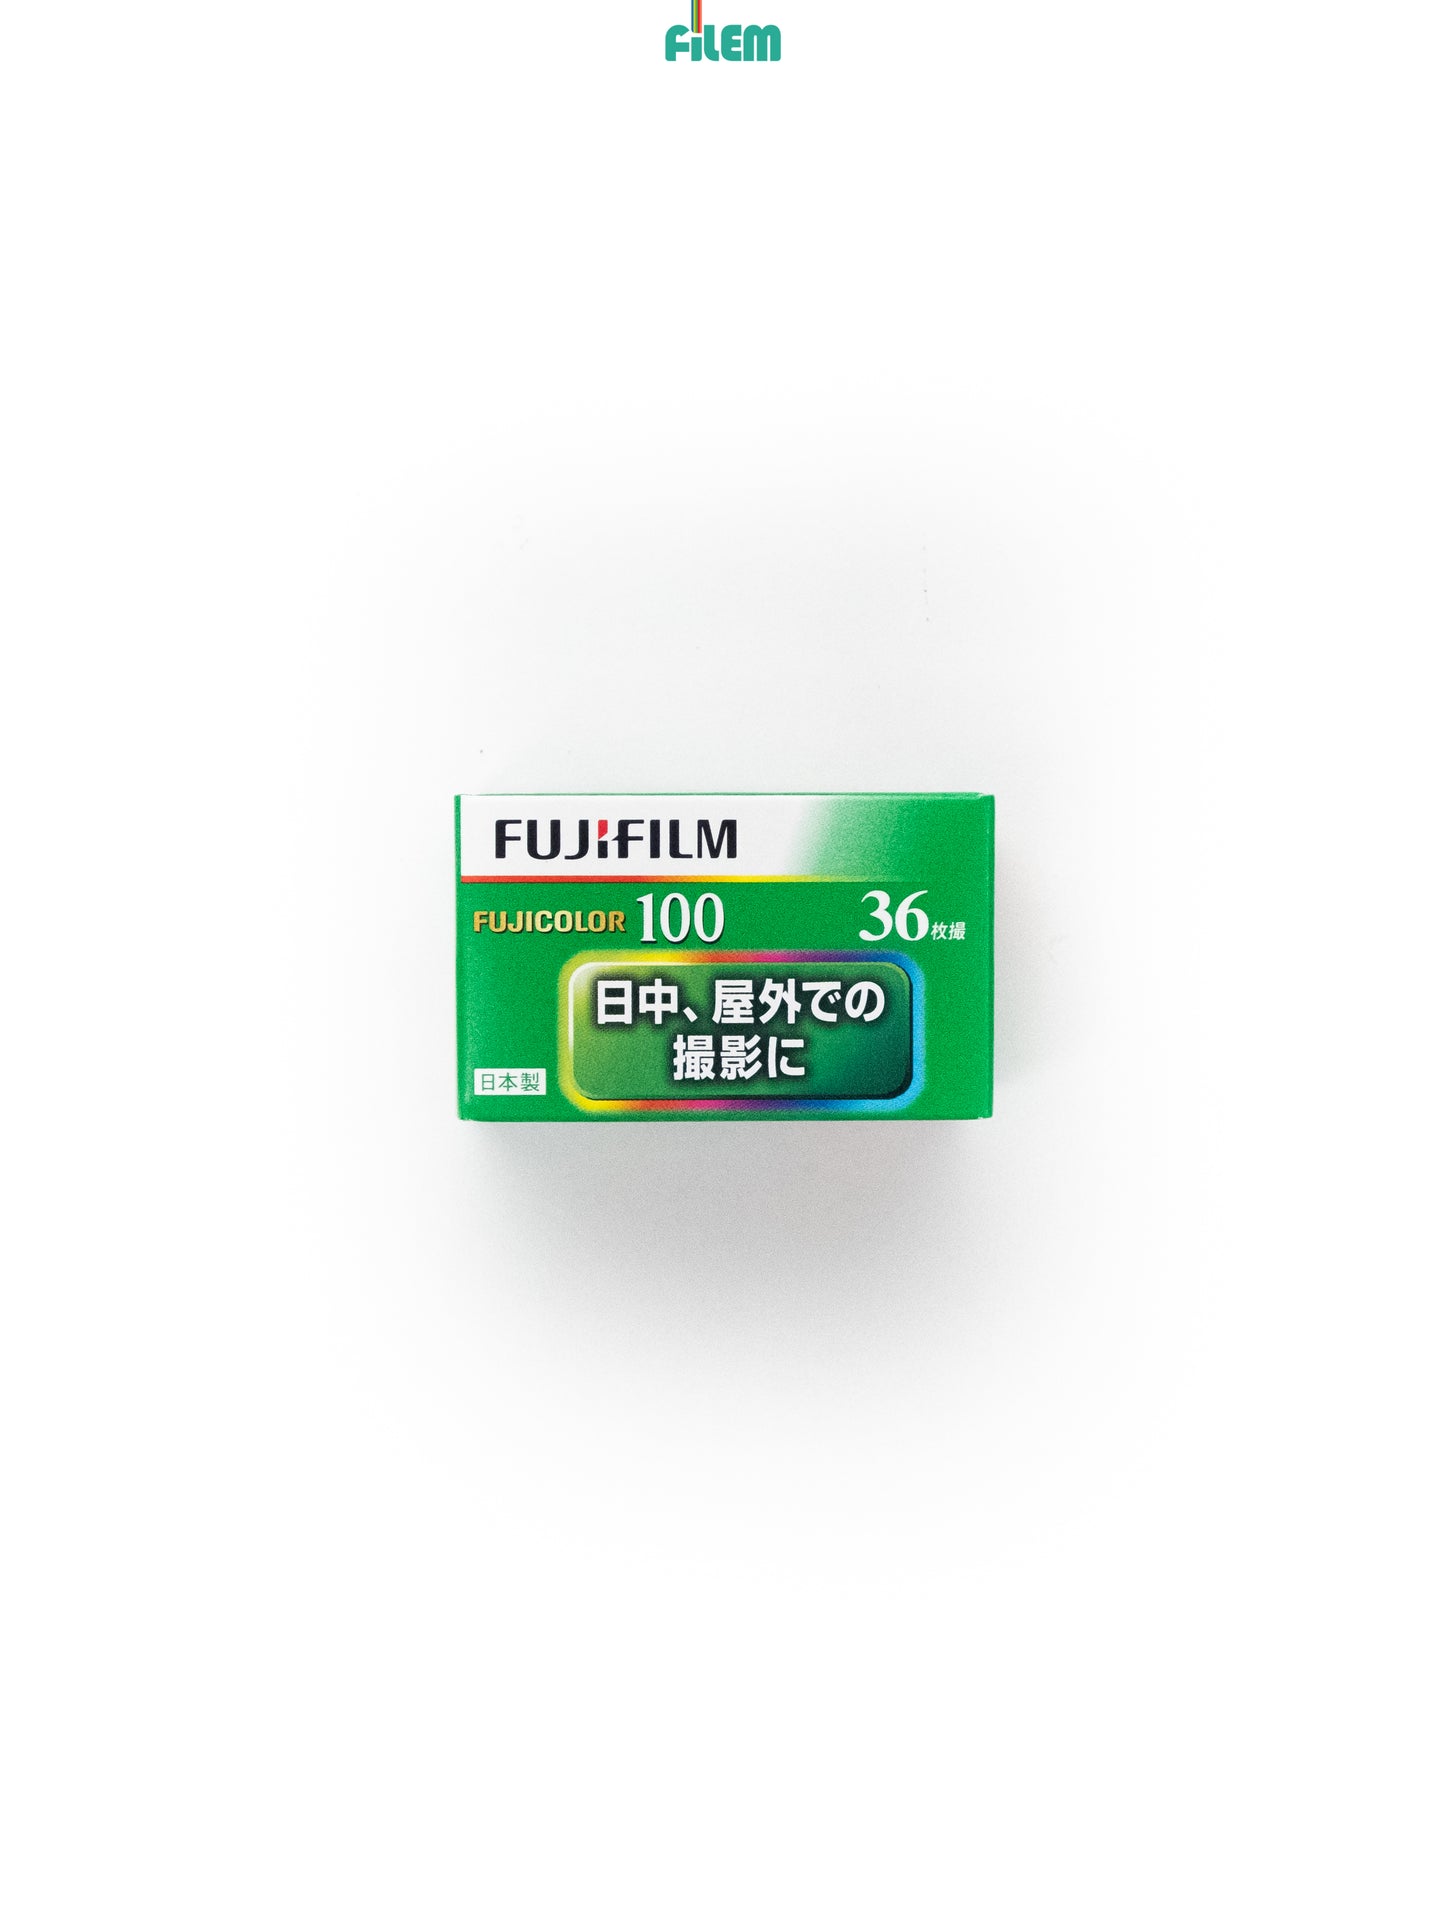 Fujicolor C100 35mm Film